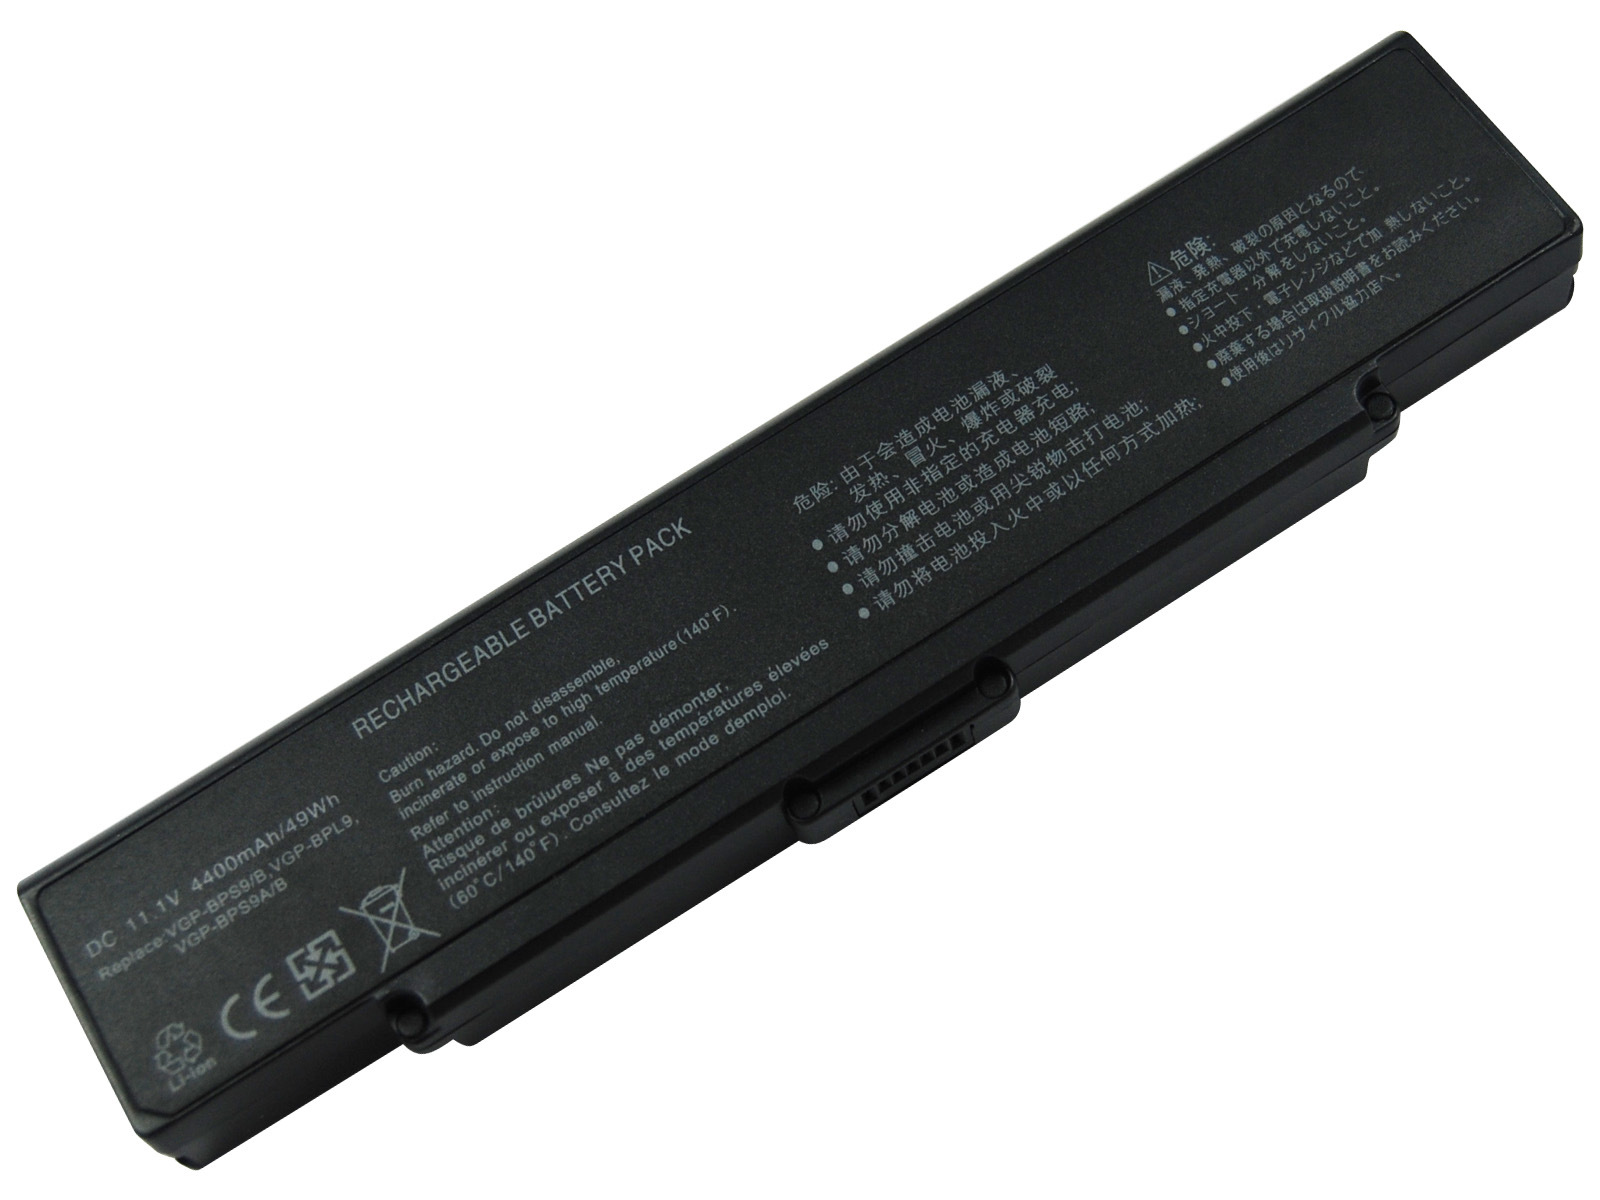 Battery for Sony VGP-BPS9/Laptop Batteries 11.1V 4800mAh